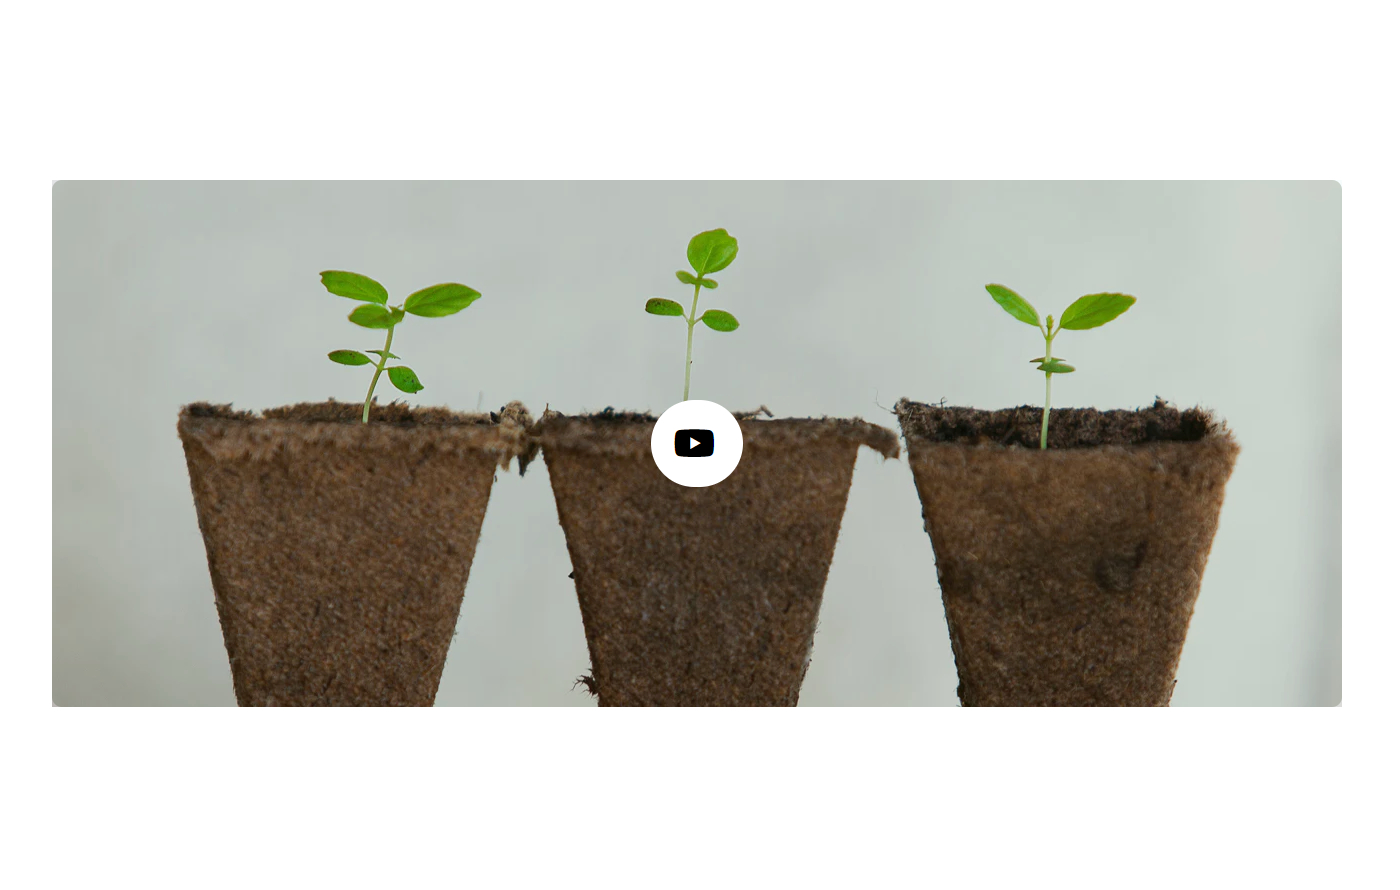 Plantdecorify - Houseplants Shopify template built by Pagefly